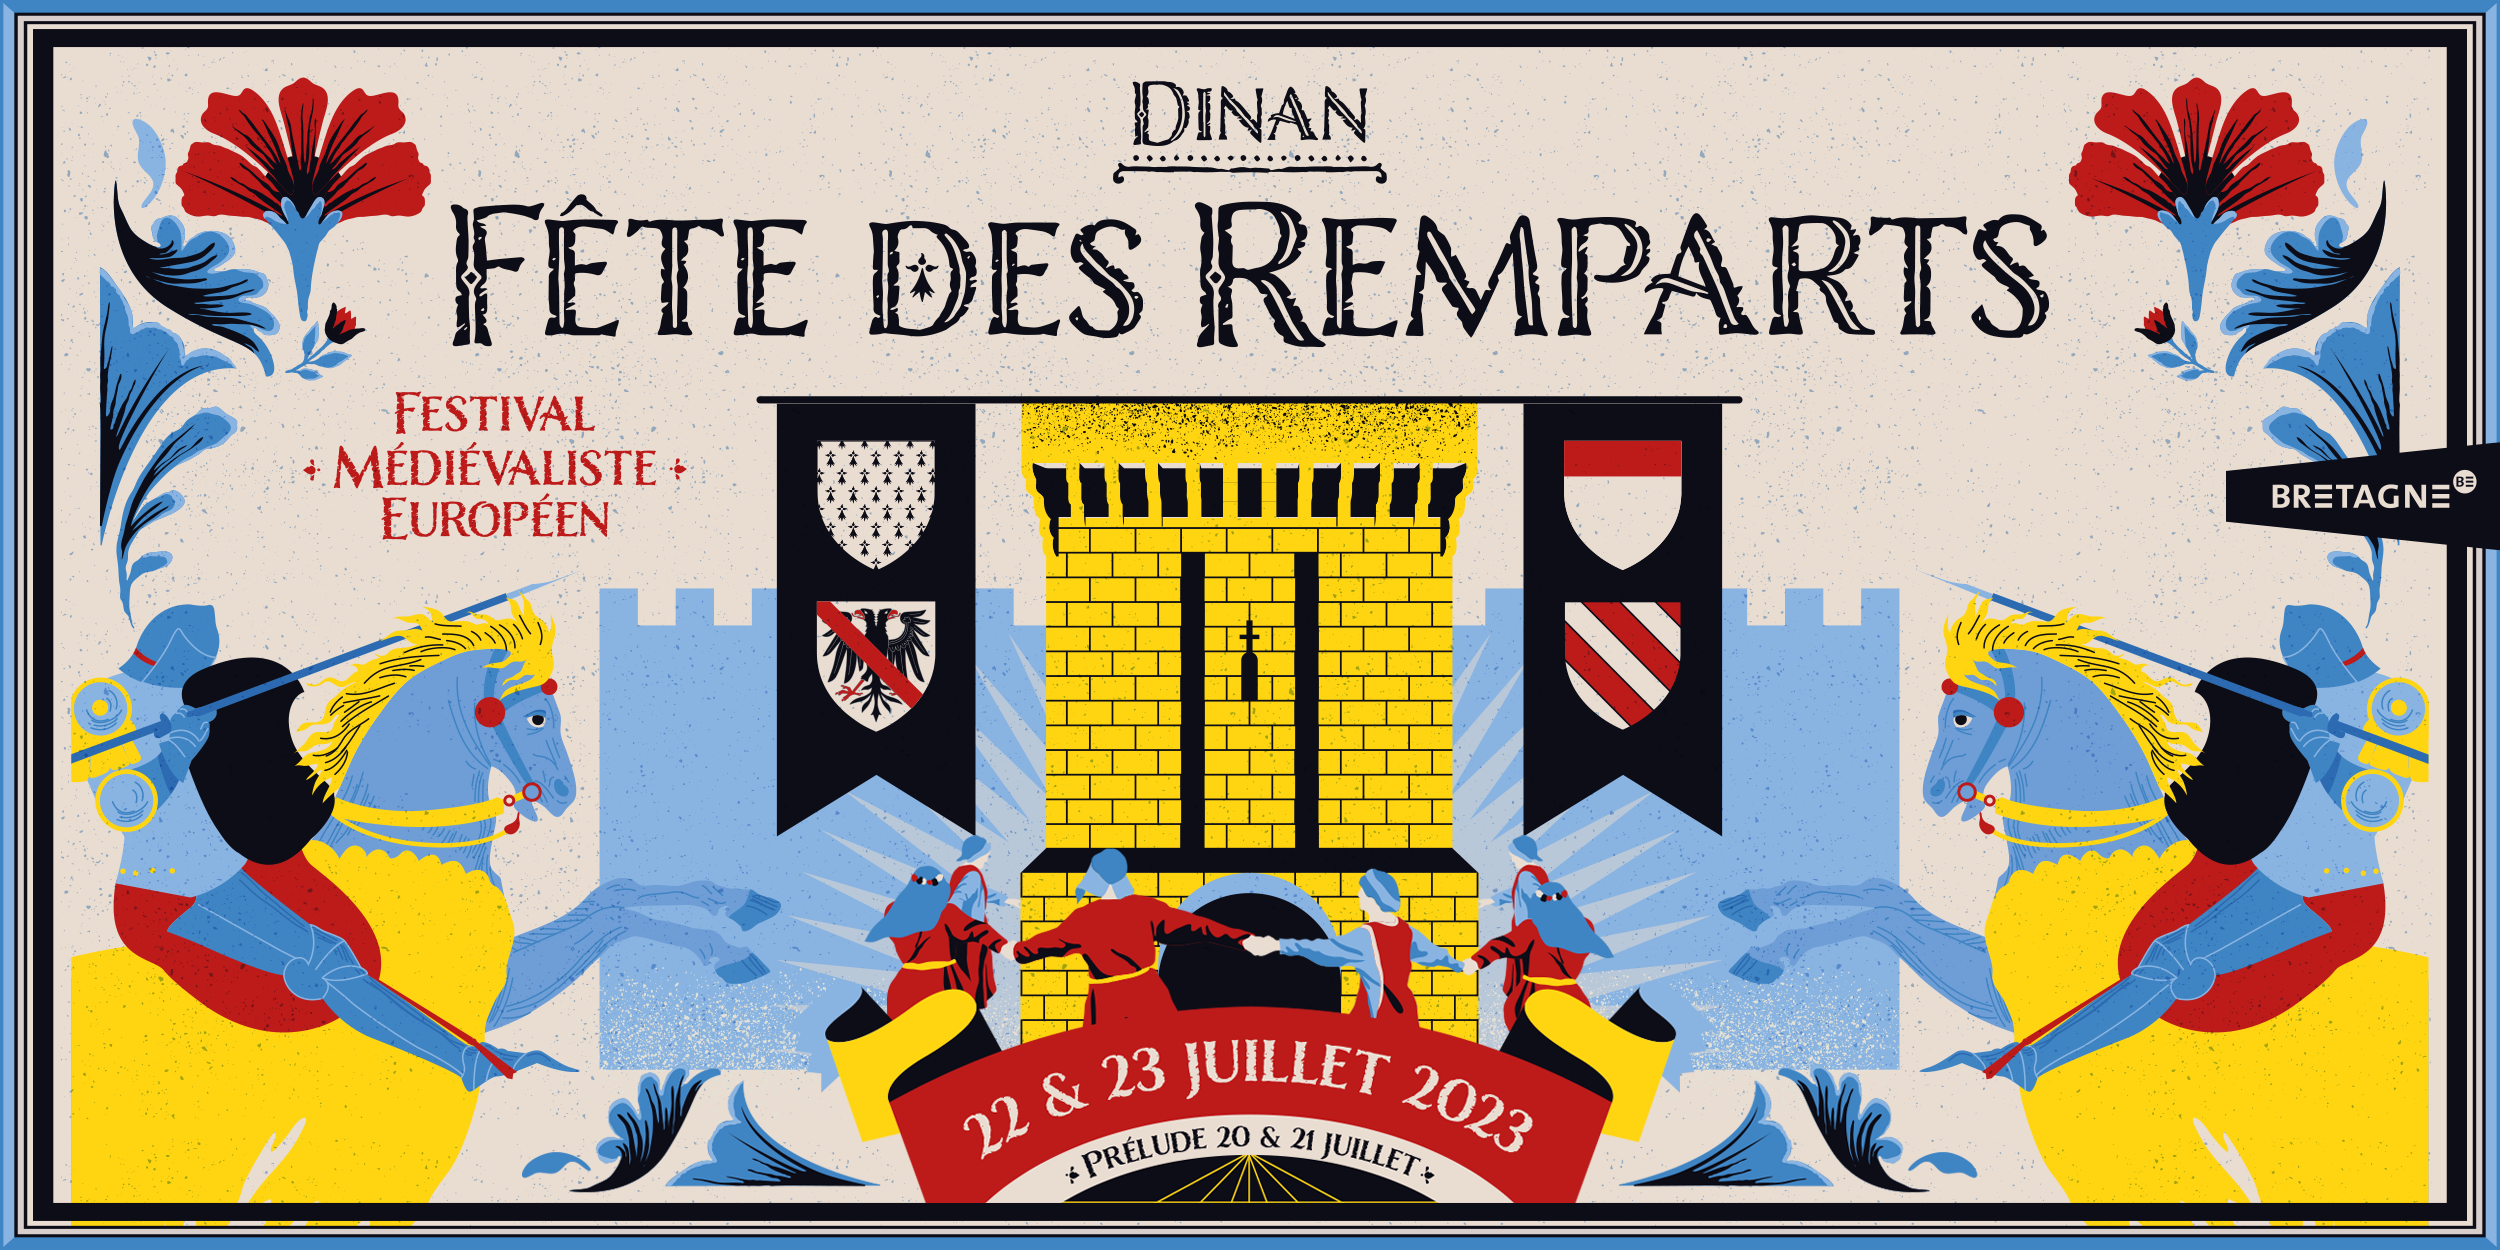 La Fête des Remparts de Dinan : Un Voyage Épique au Cœur du Moyen Âge